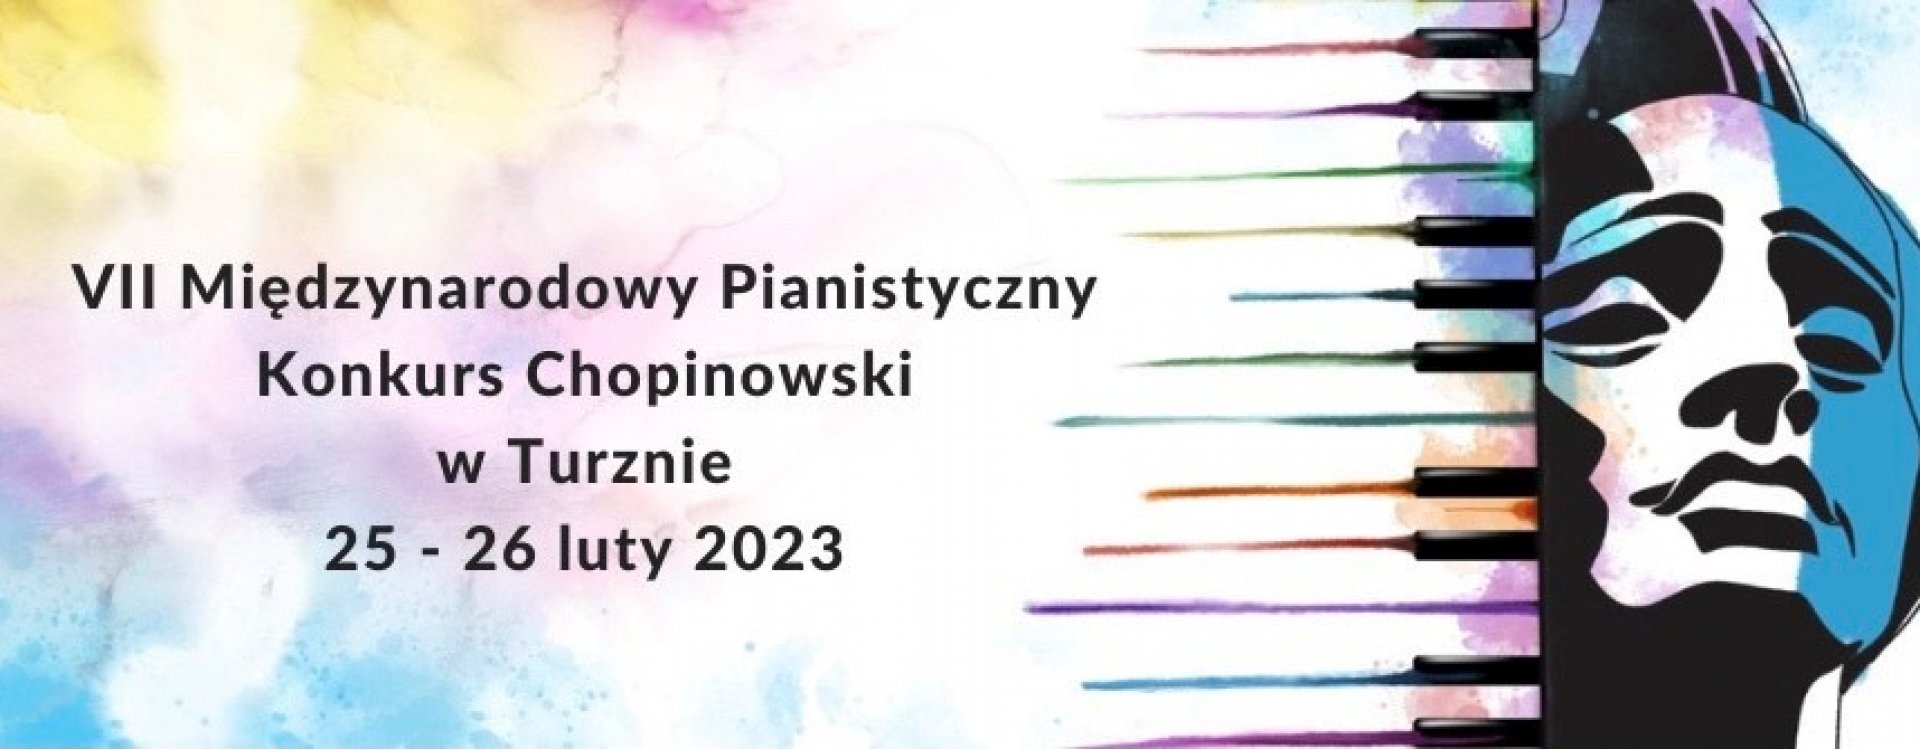 VII Międzynarodowy Pianistyczny Konkurs Chopinowski w Turznie pod honorowym patronatem Ministerstwa Kultury i Dziedzictwa Narodowego 25-26.02.2023